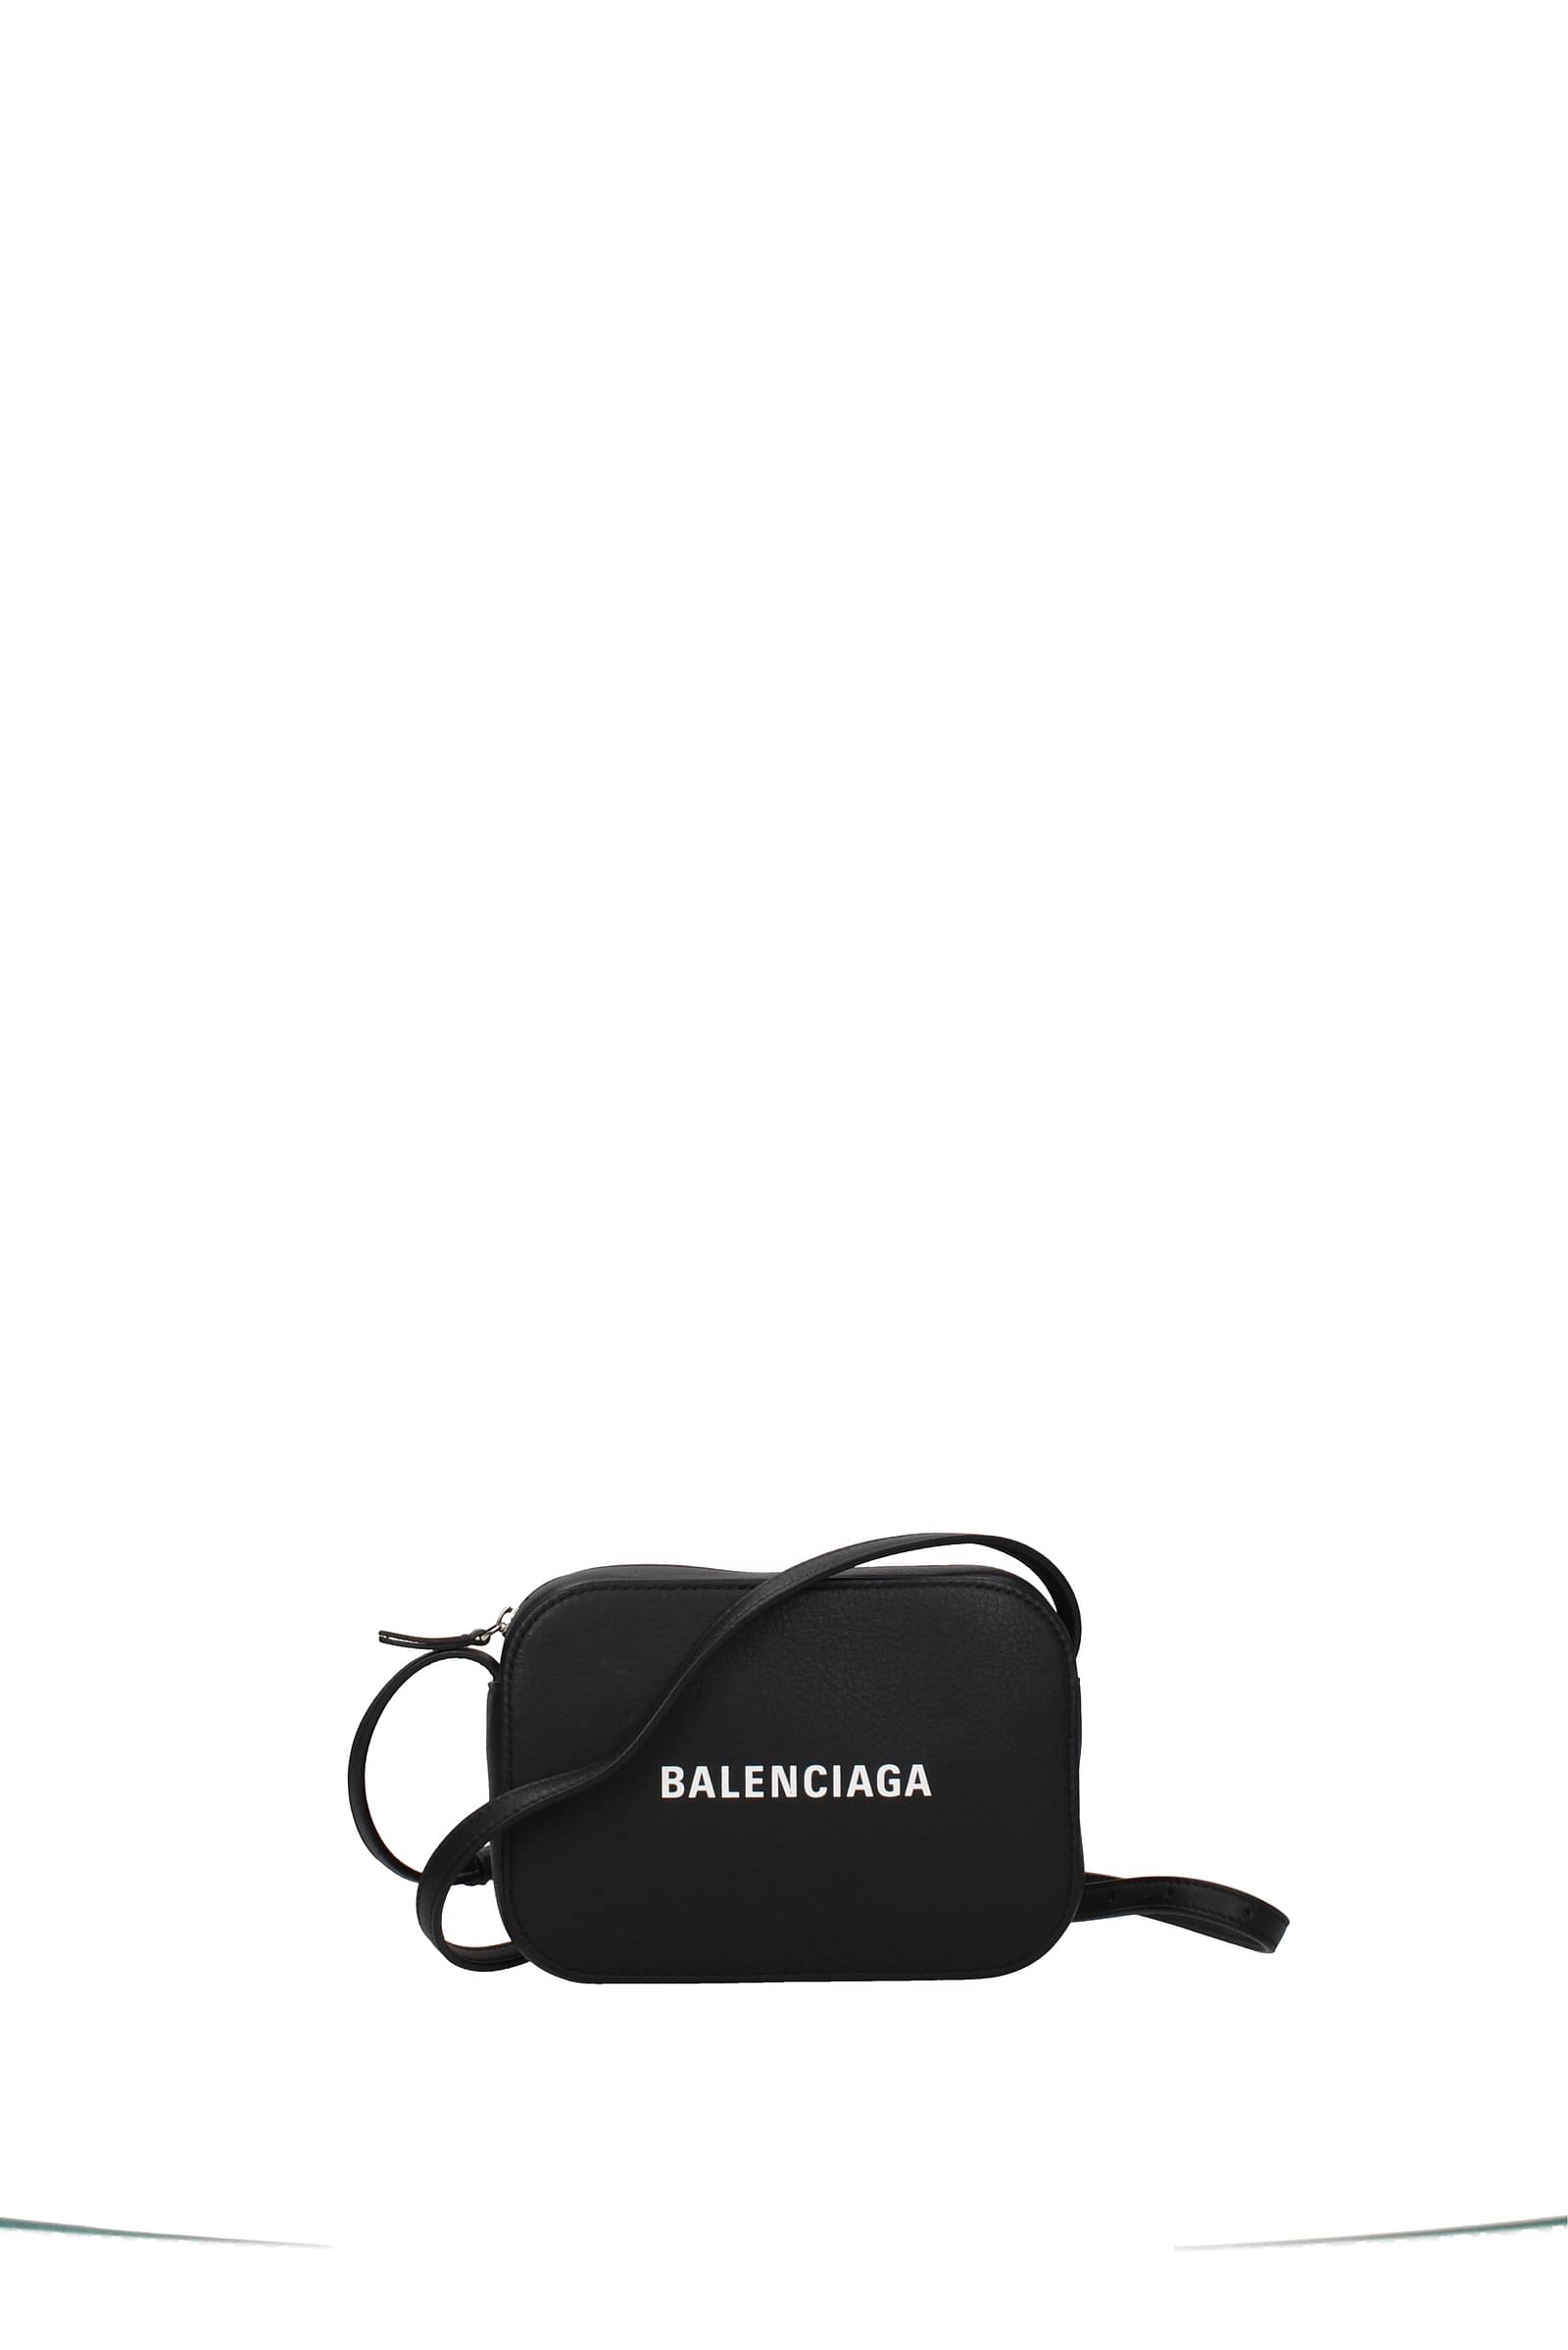 Balenciaga  Crossbody bag for Man  Black  6559822JMJX1000  FRMODACOM